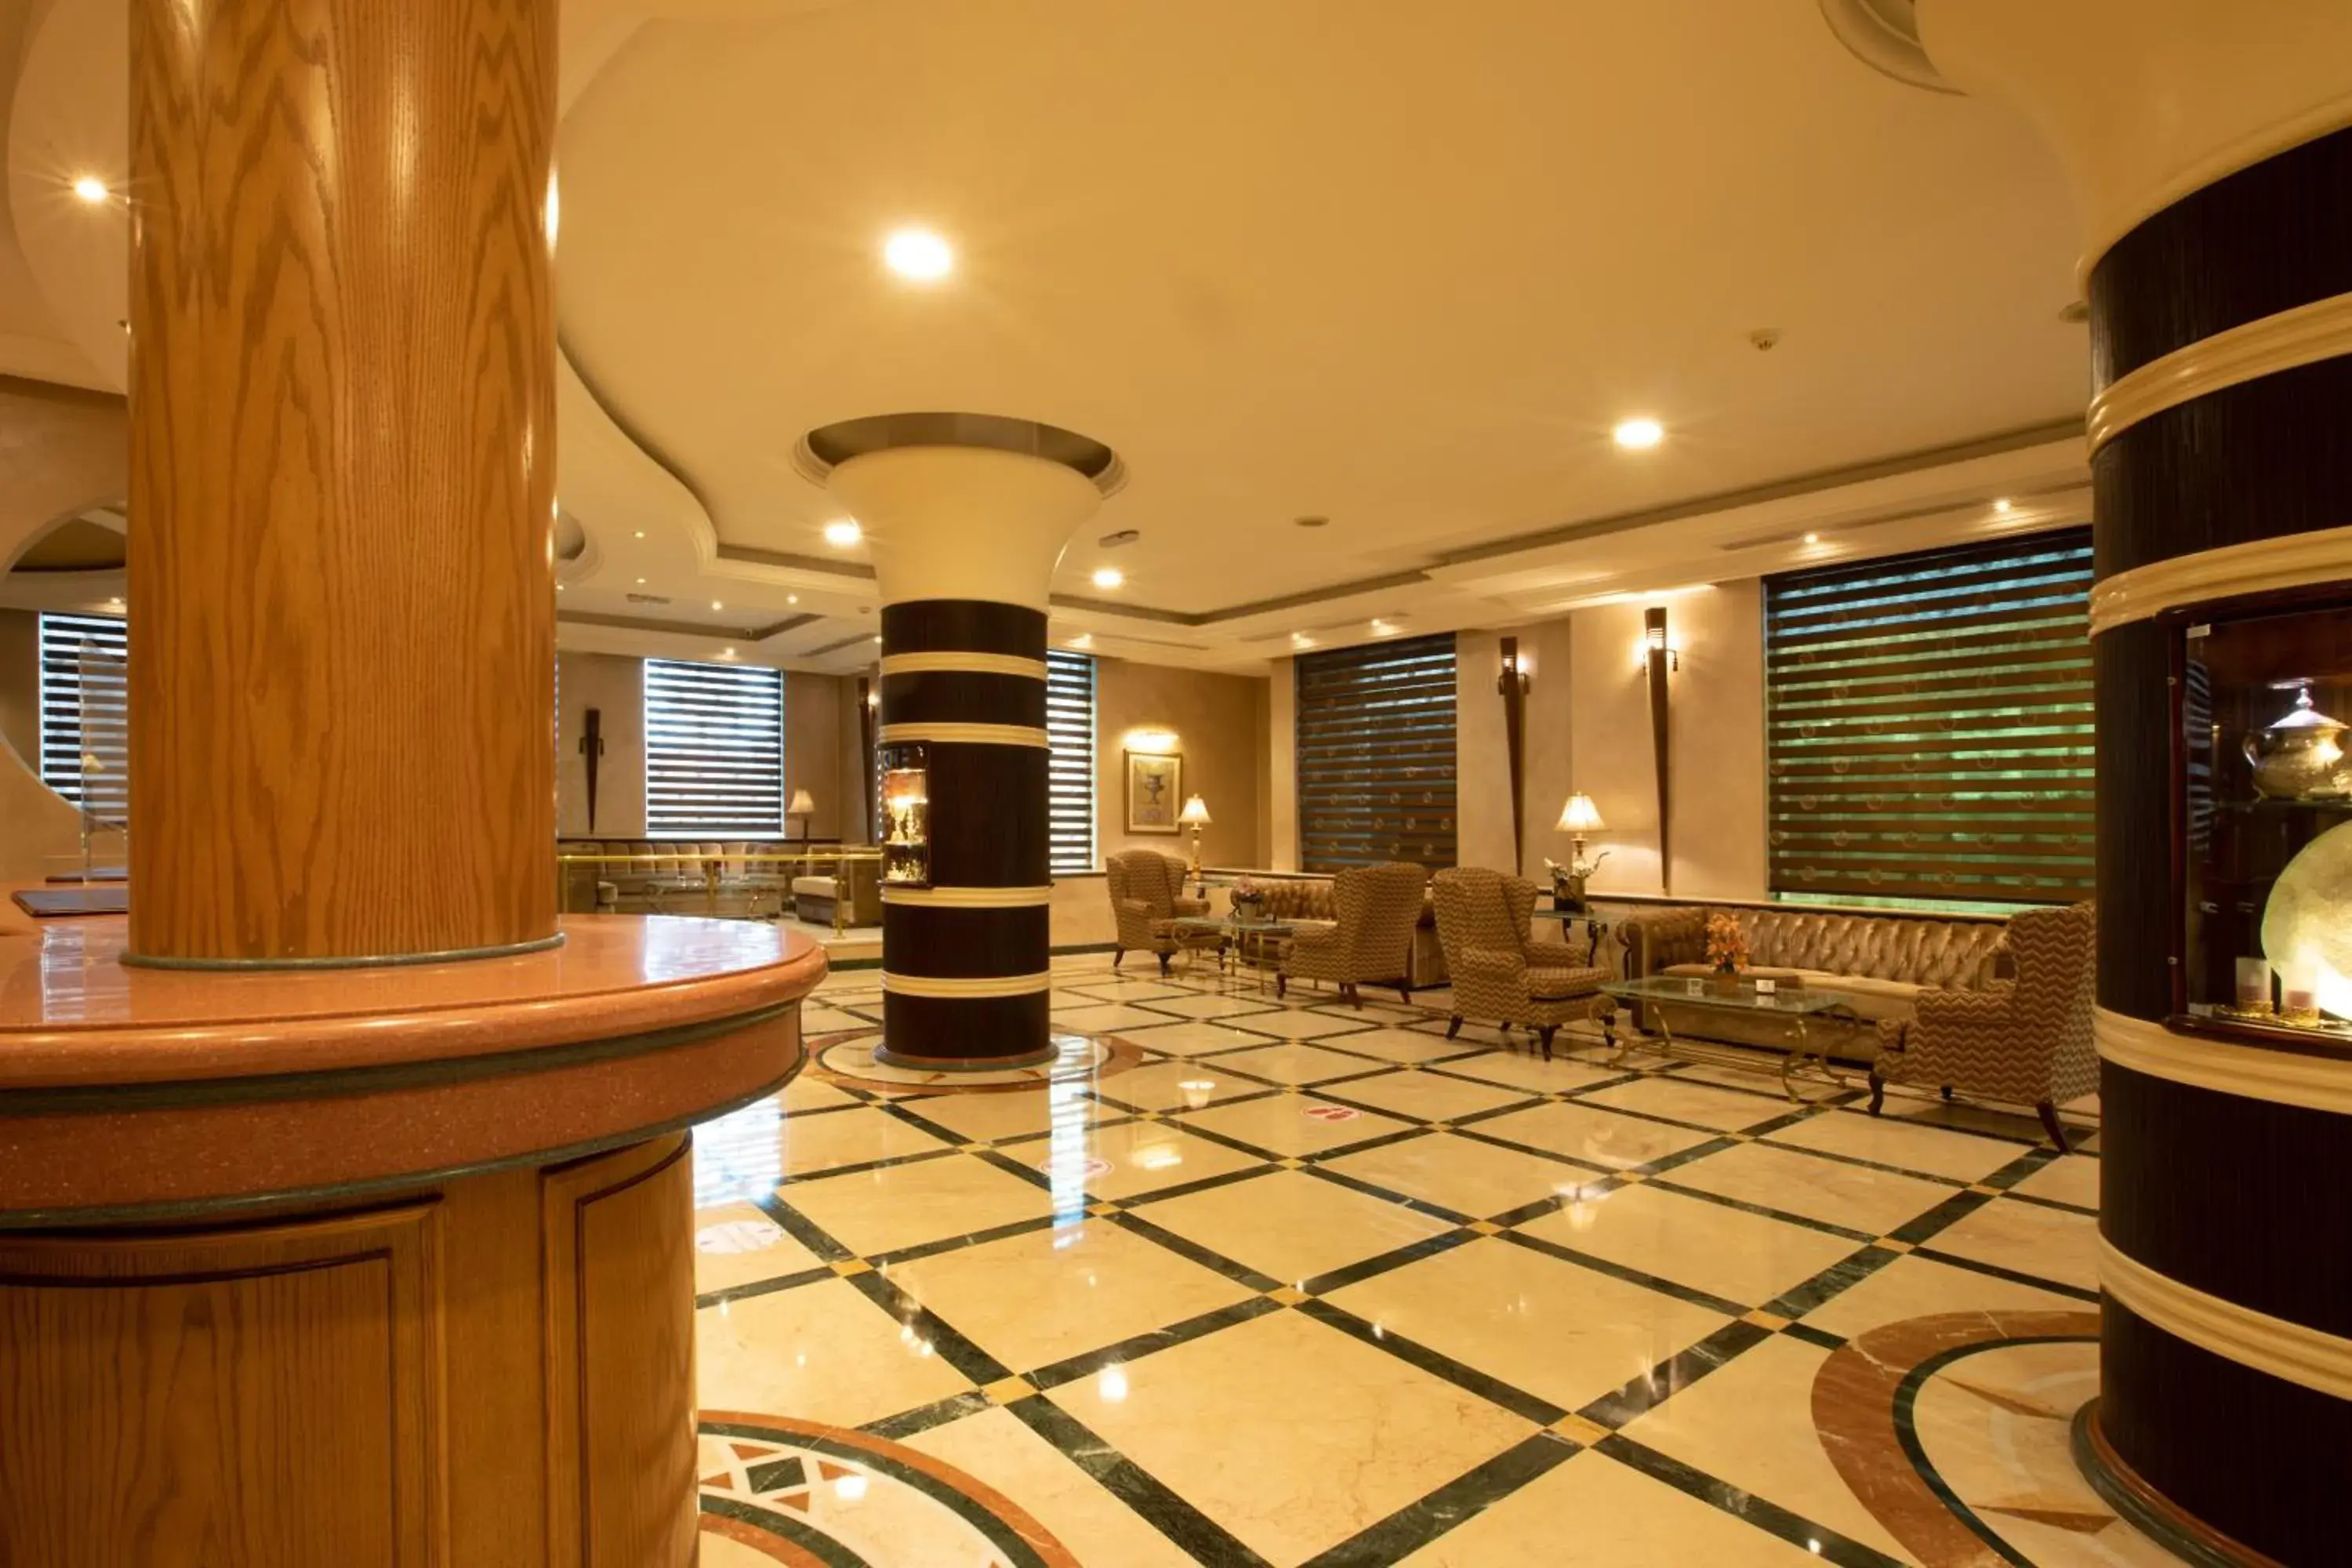 Lobby or reception, Lobby/Reception in Bristol Amman Hotel